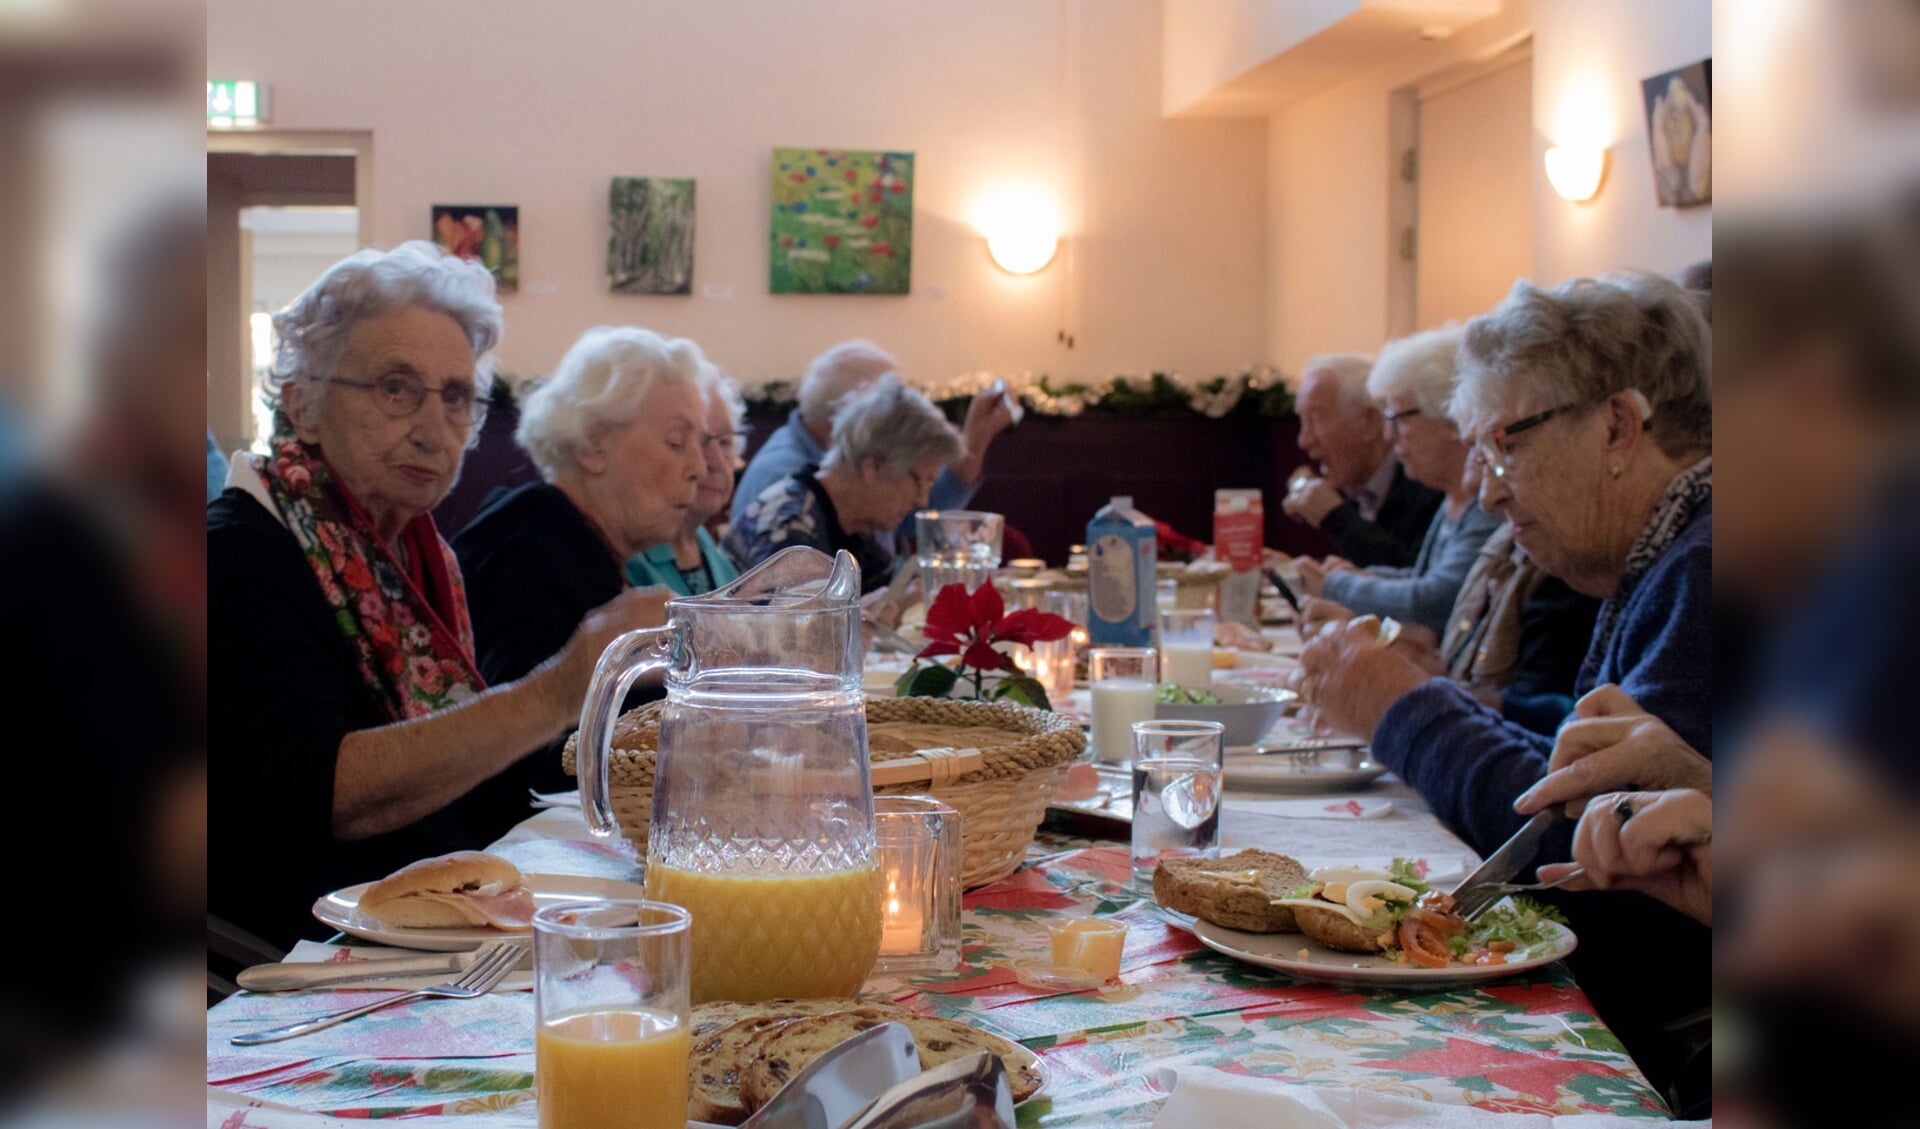  In de Huiskamer van het Wijksteunpunt kwamen ruim 25 ouderen samen voor een lunch. (foto: Aangeleverd)